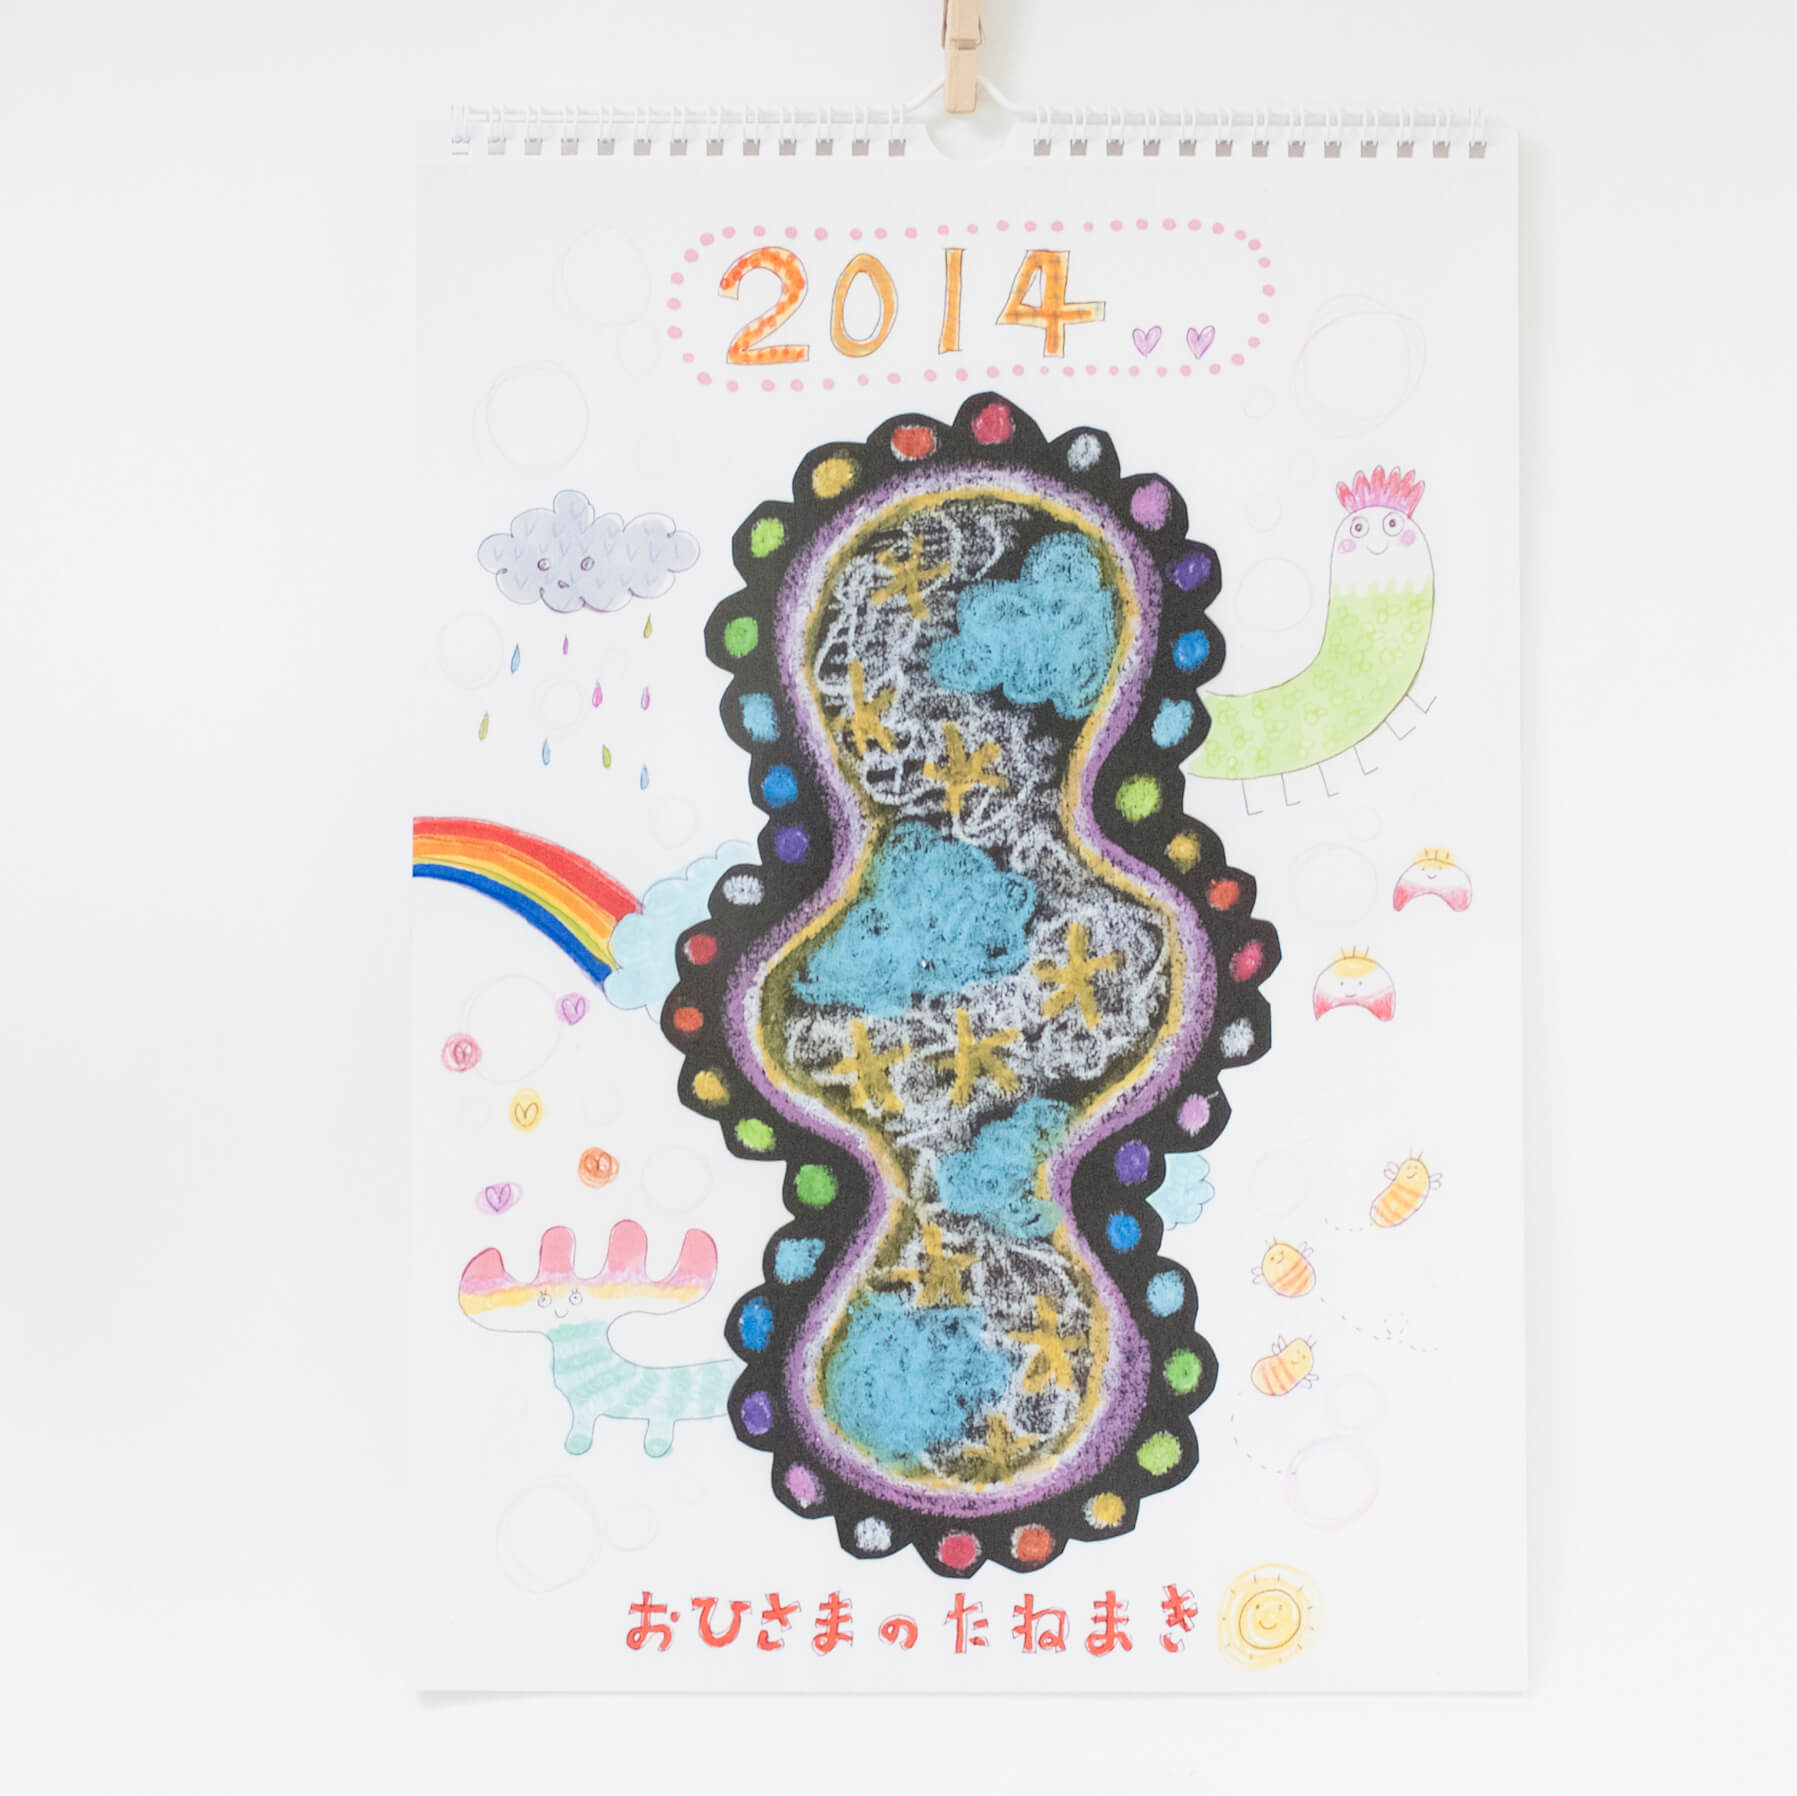 「生方  由美子 様」製作のオリジナルカレンダー